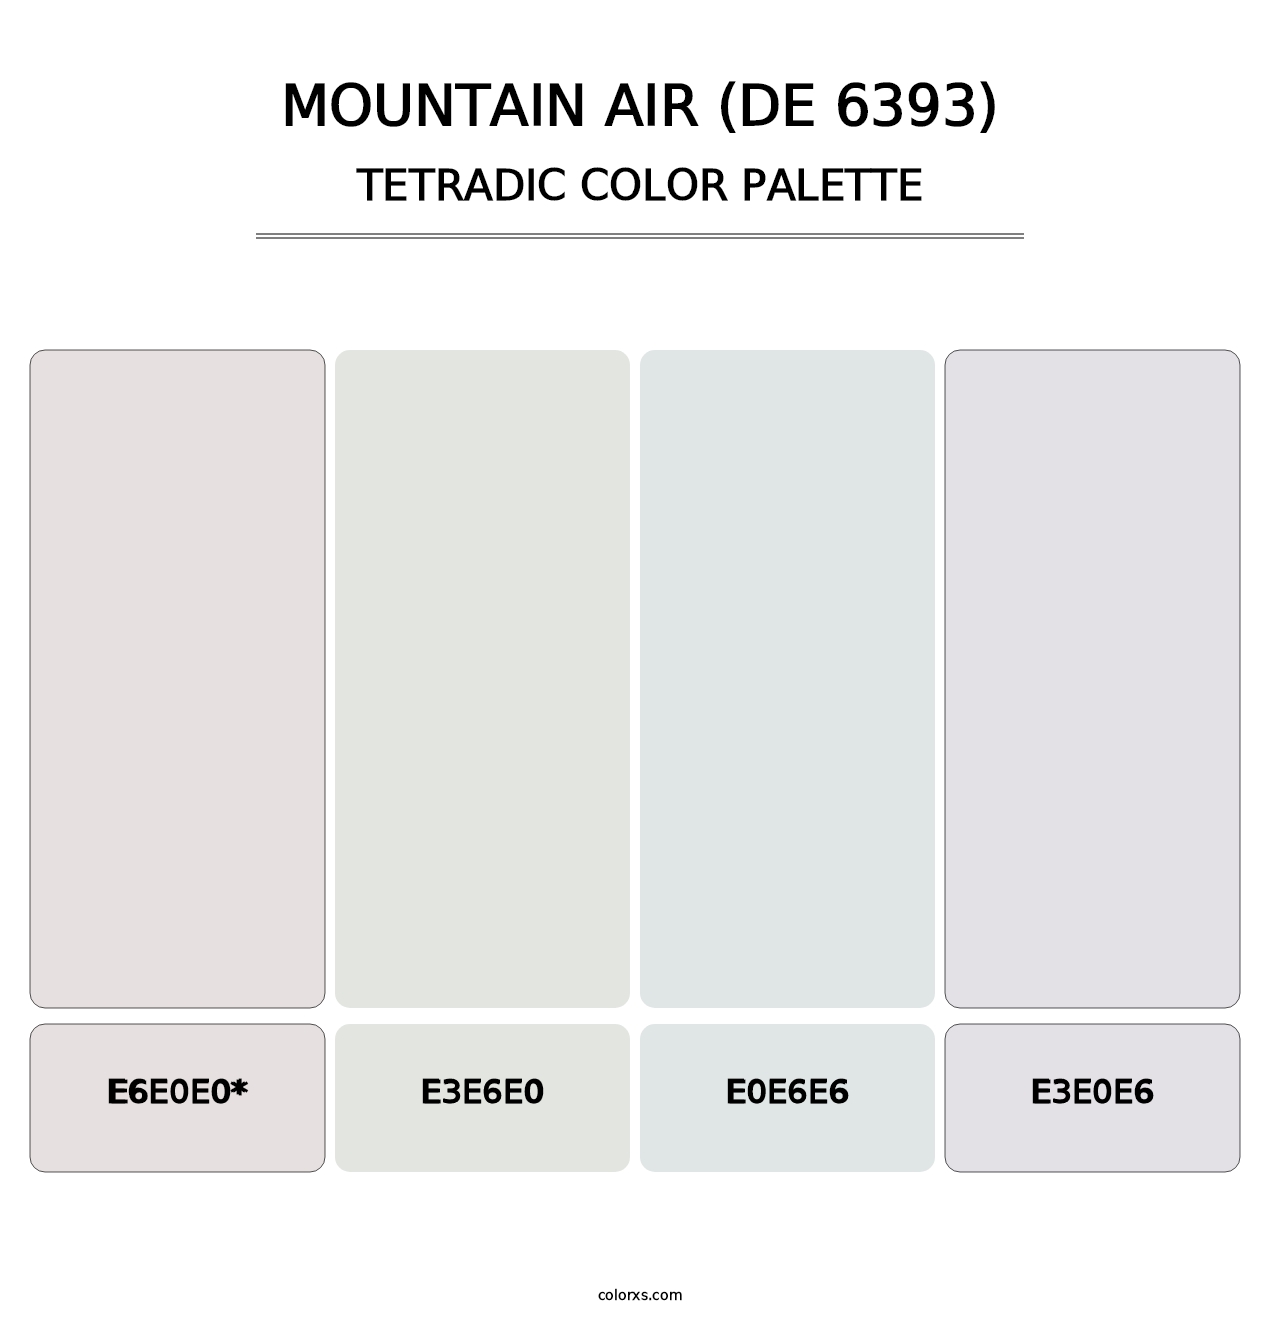 Mountain Air (DE 6393) - Tetradic Color Palette